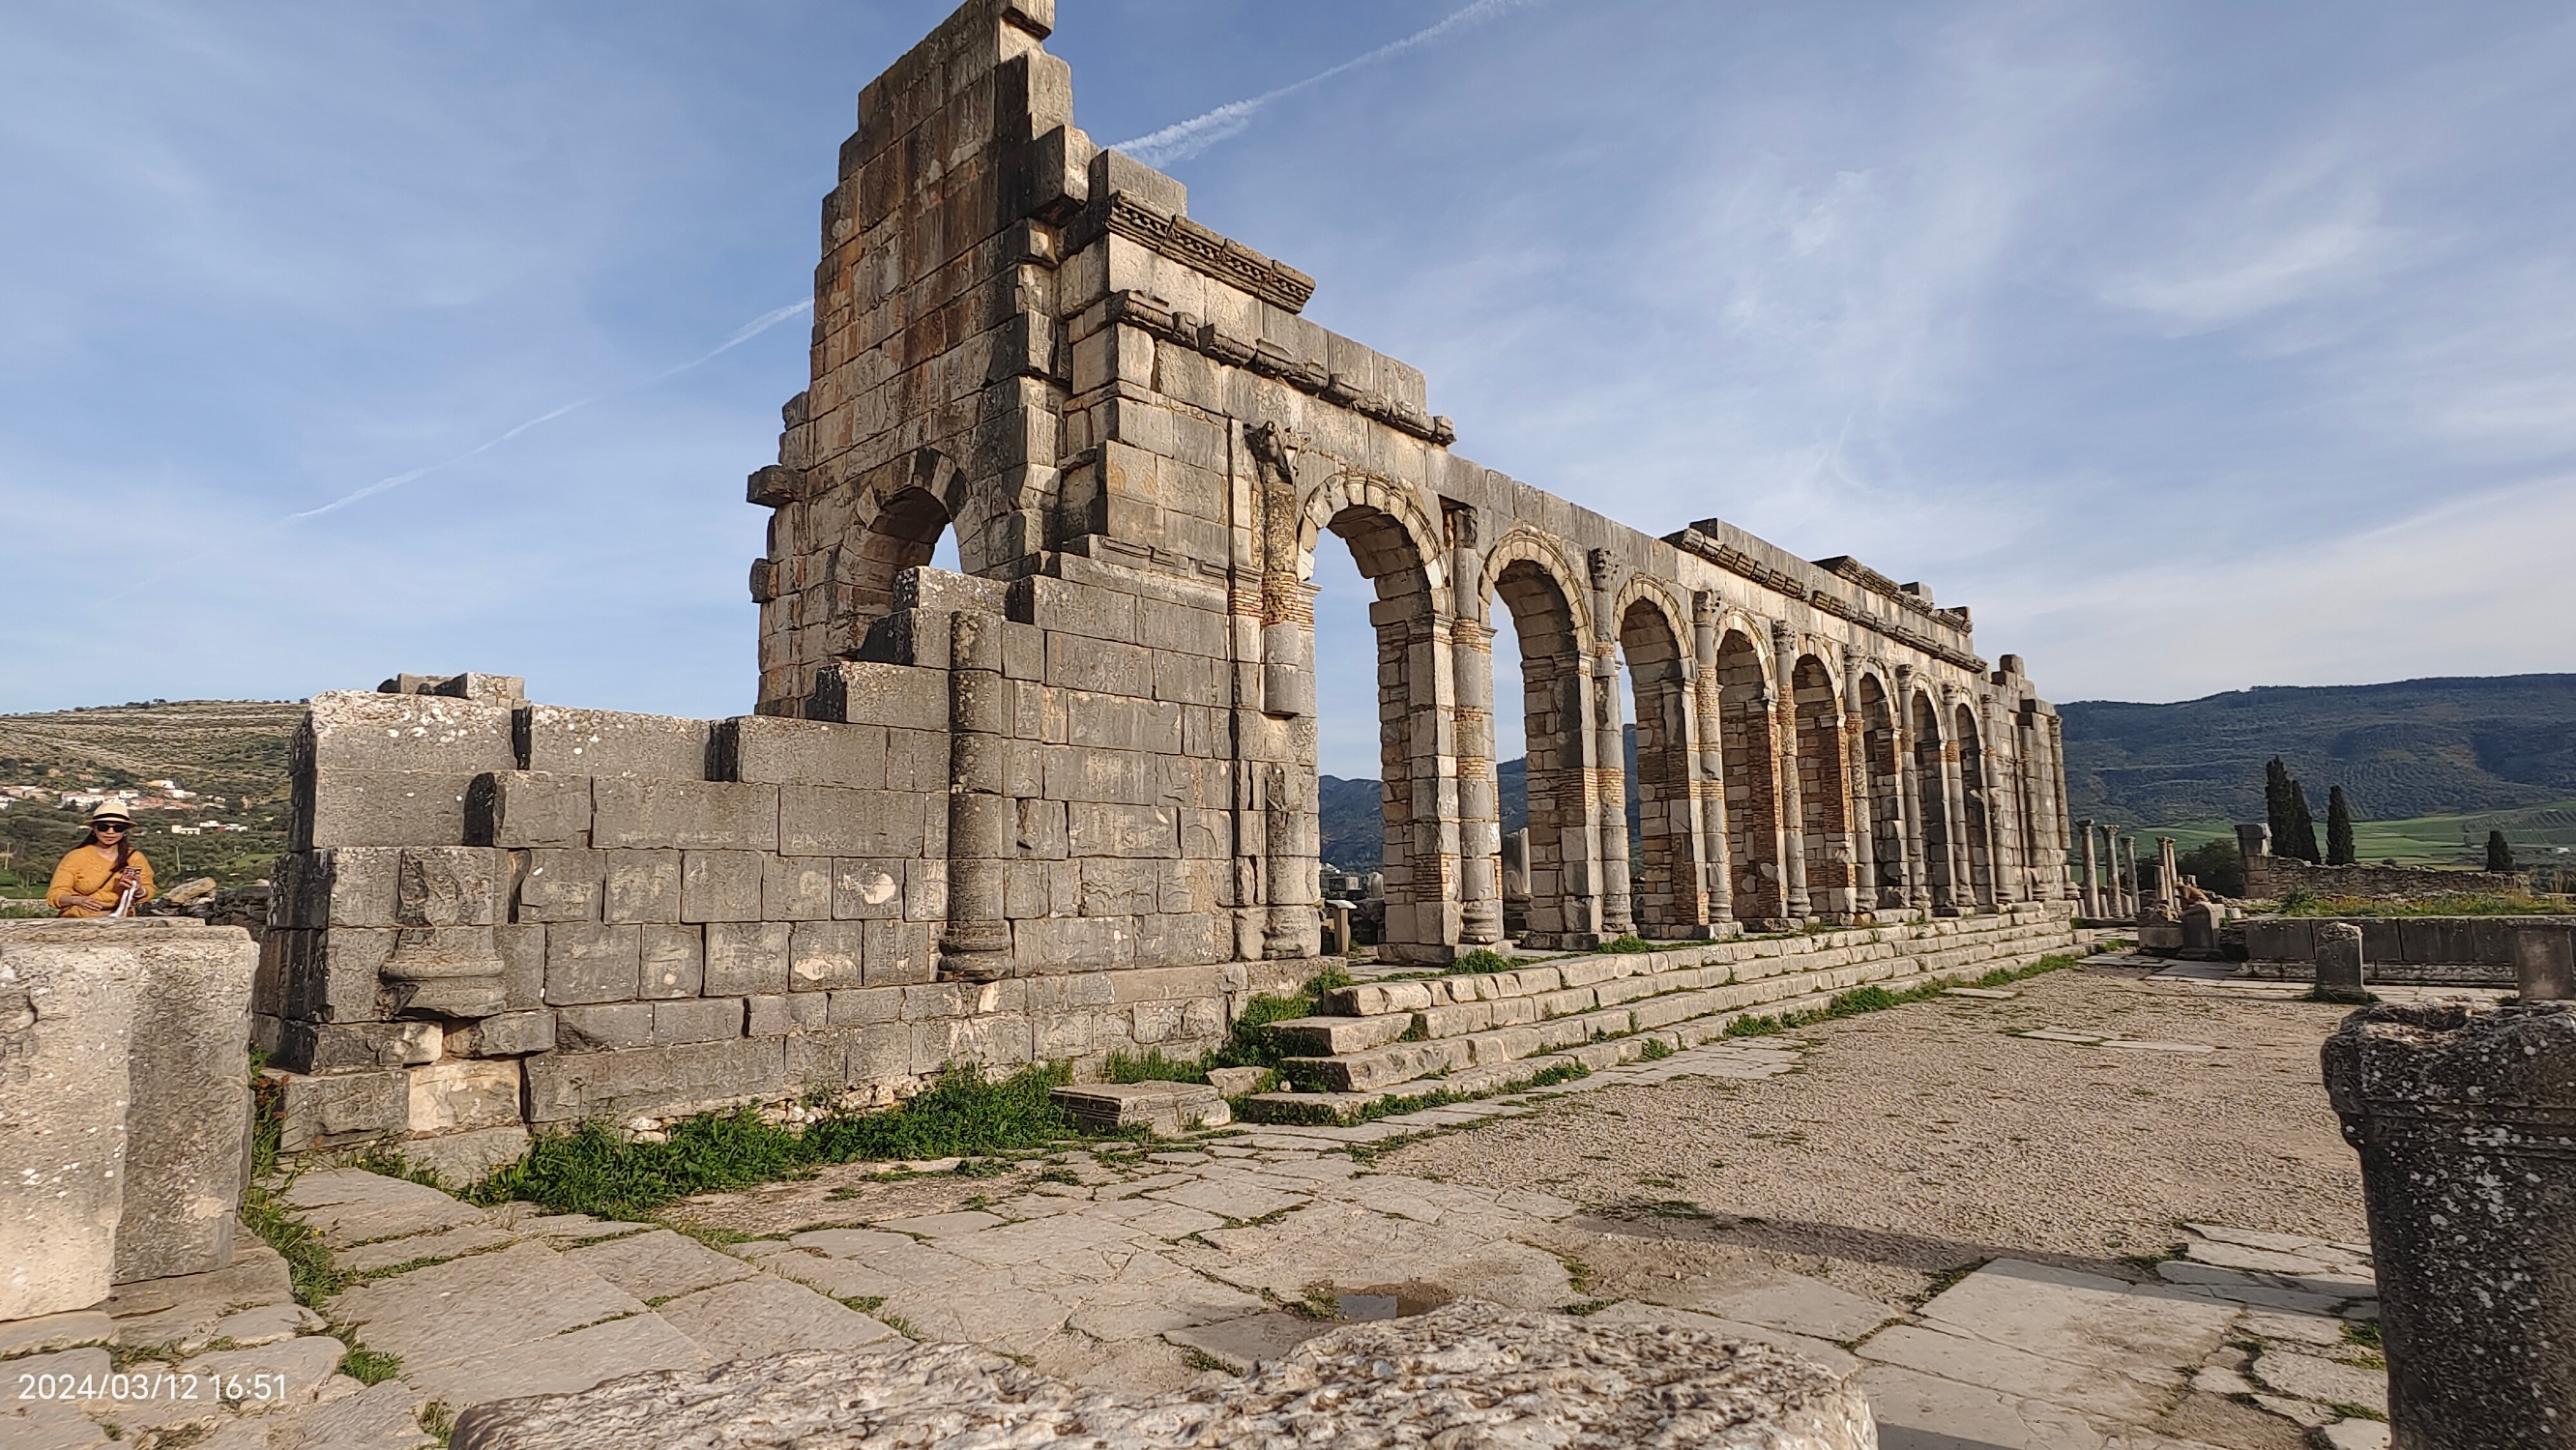 位于梅克内斯附近的古罗马遗址沃吕比利斯曾经是一个十分繁华的大都市，现在变成了一片荒凉的废墟了。这里留